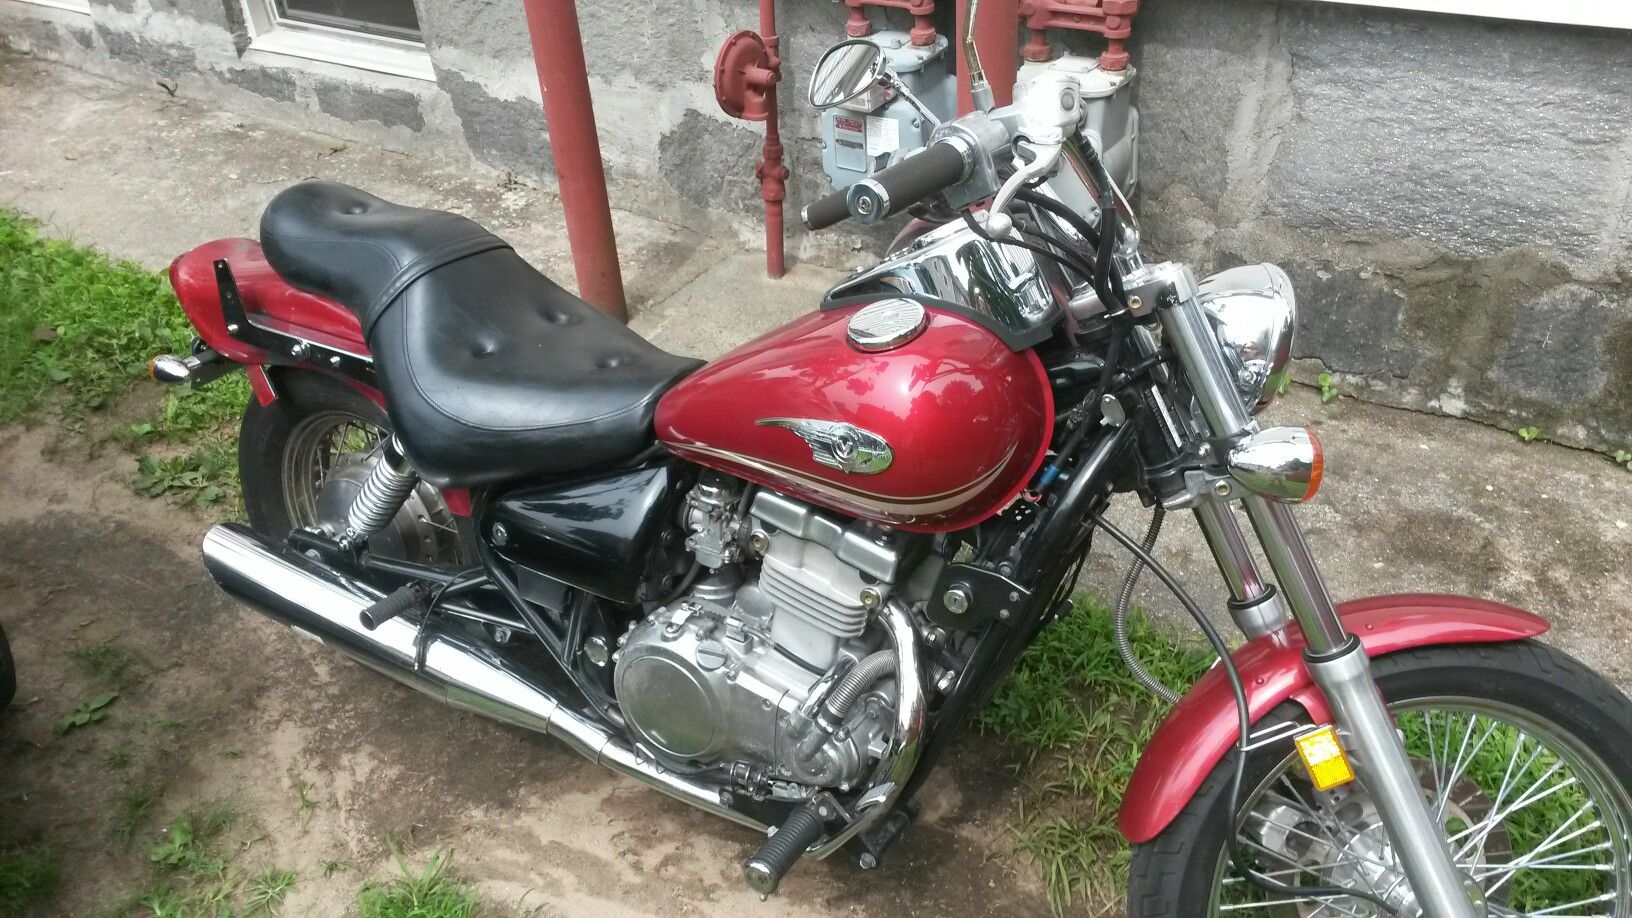 Kawasaki 2004 500 cc Vulcan motorcycle